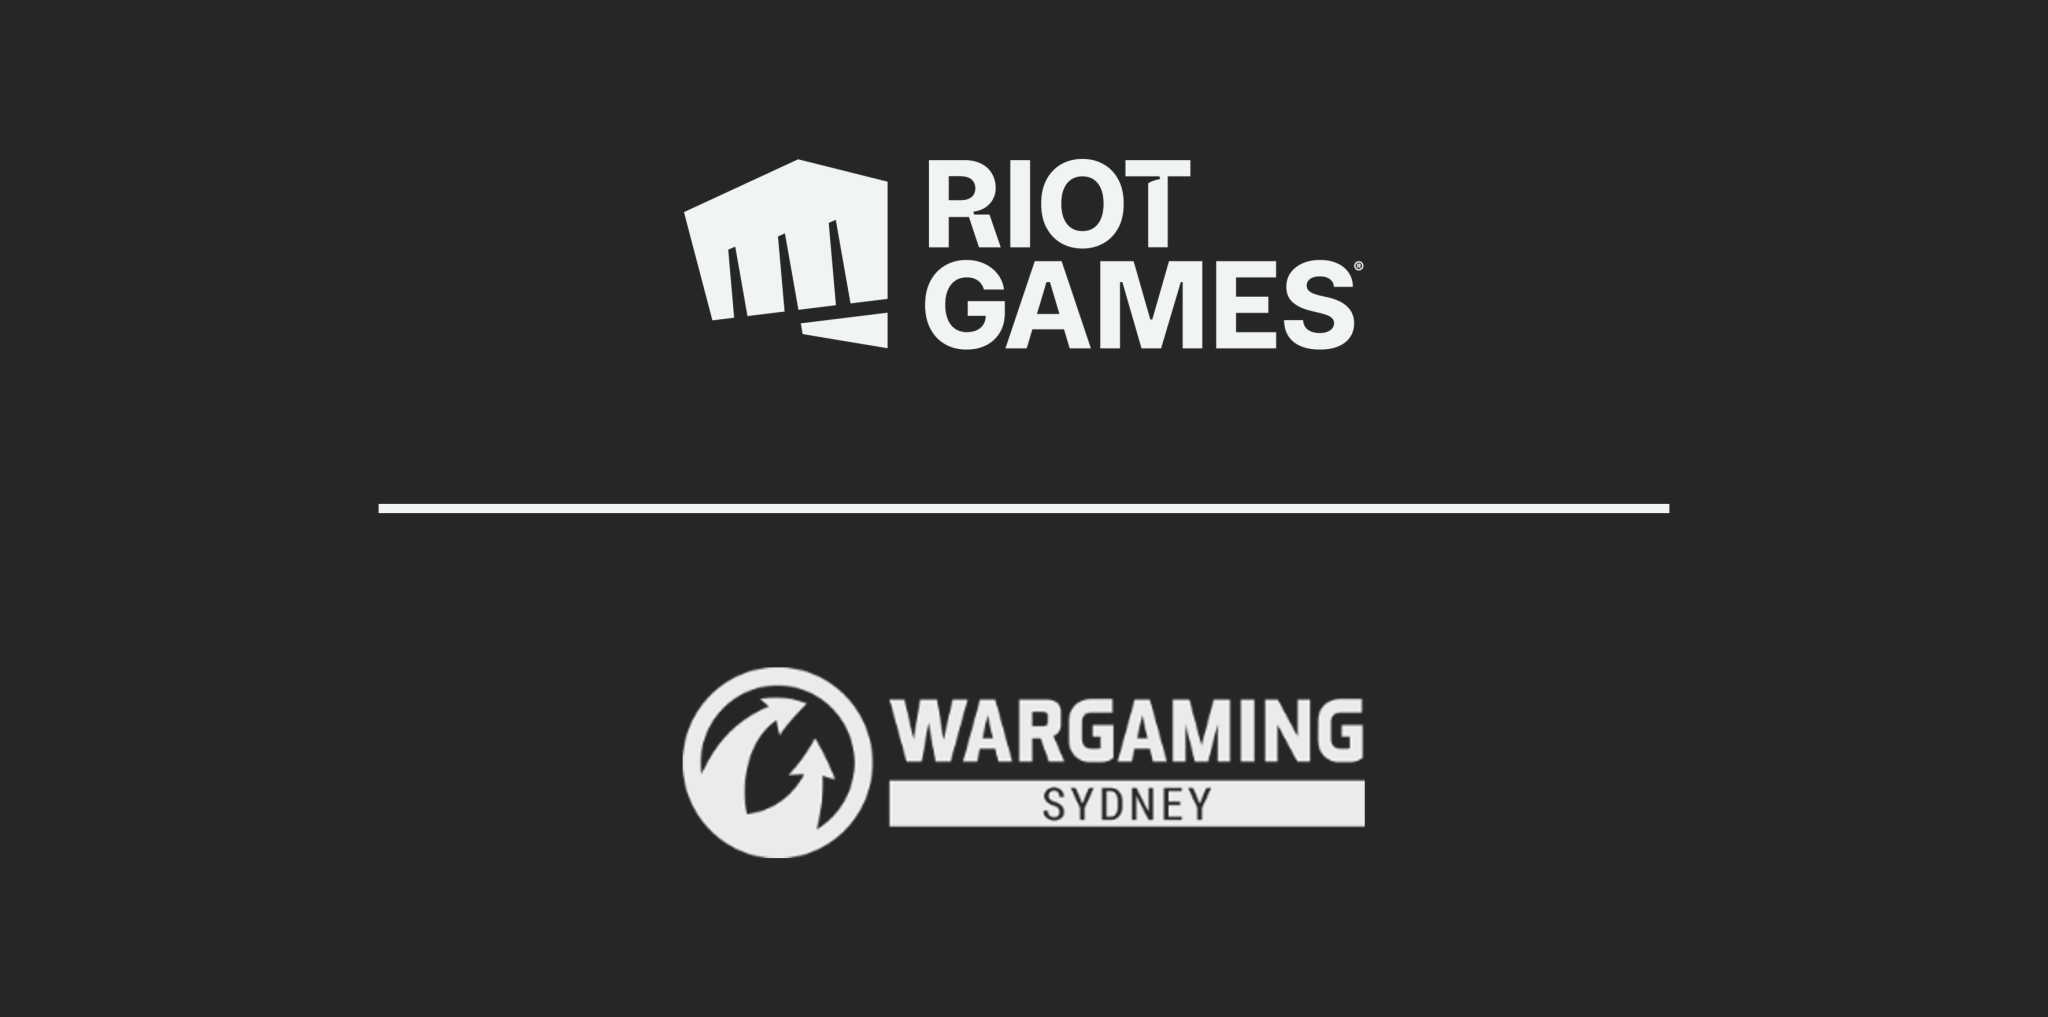 Imagen para Riot Games compra el estudio de Sydney de Wargaming